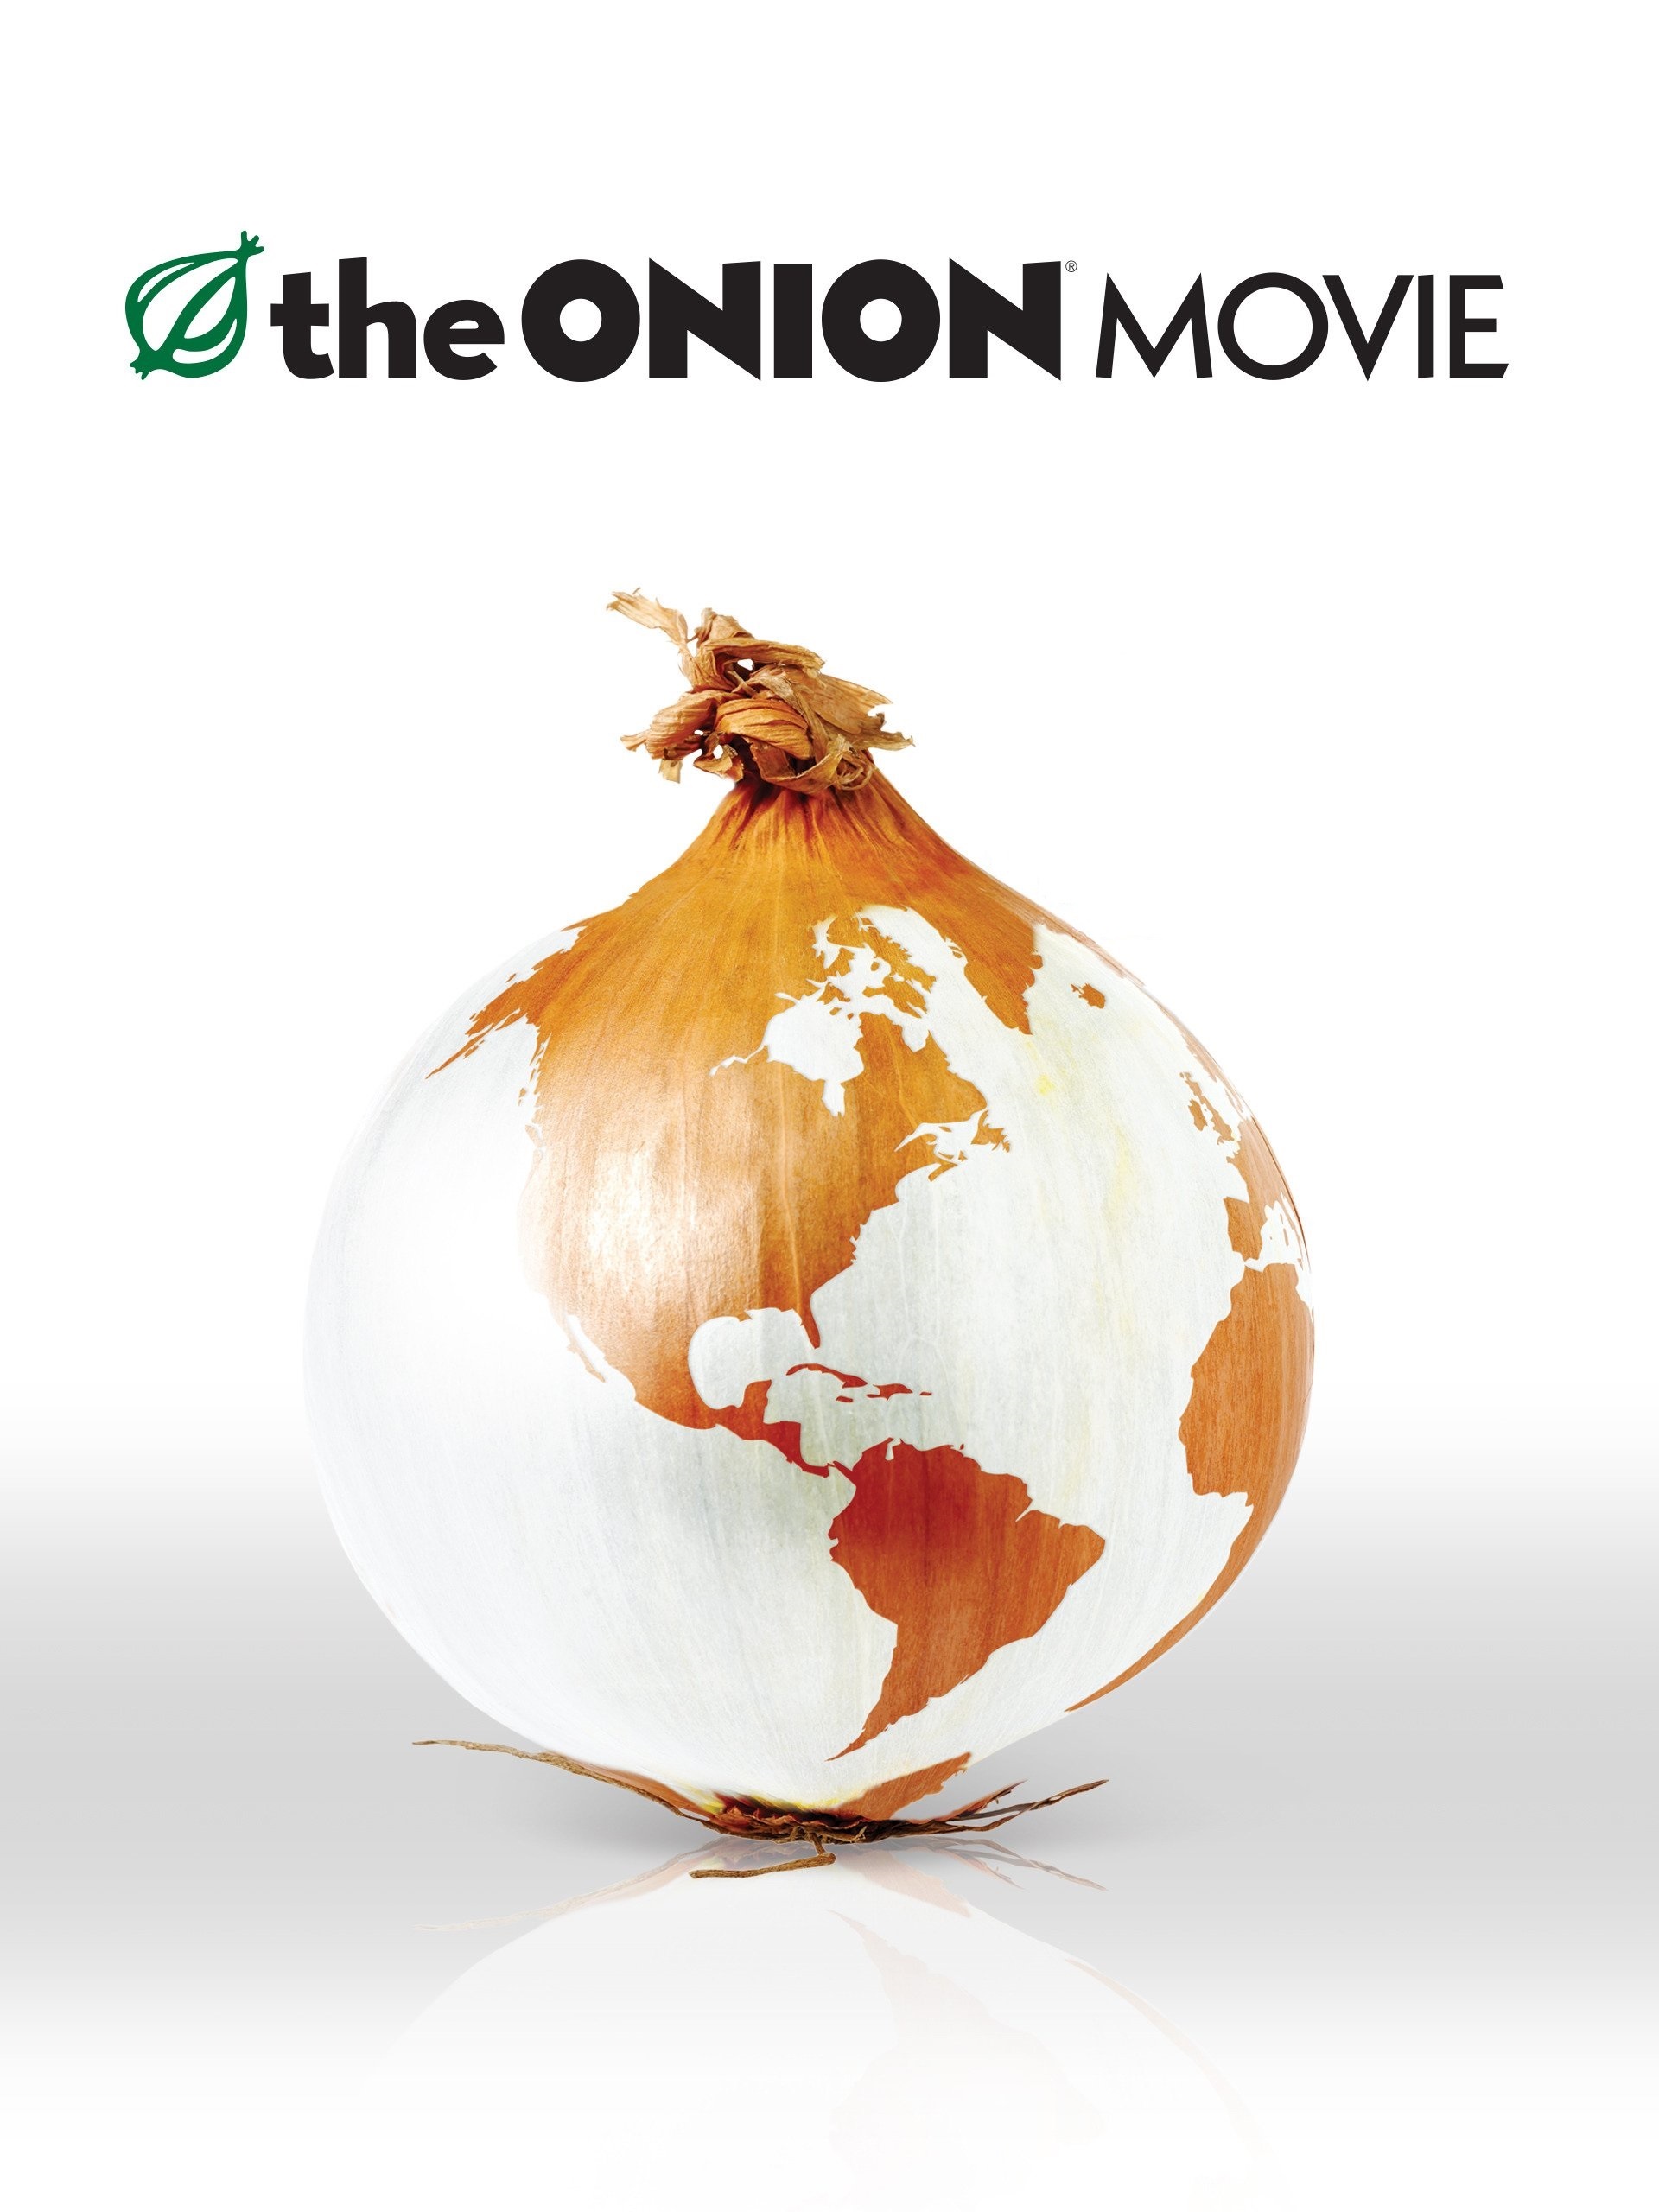 ดูหนังออนไลน์ฟรี The Onion Movie (2008) เจาะข่าวขำ ยำข่าวรั่ว